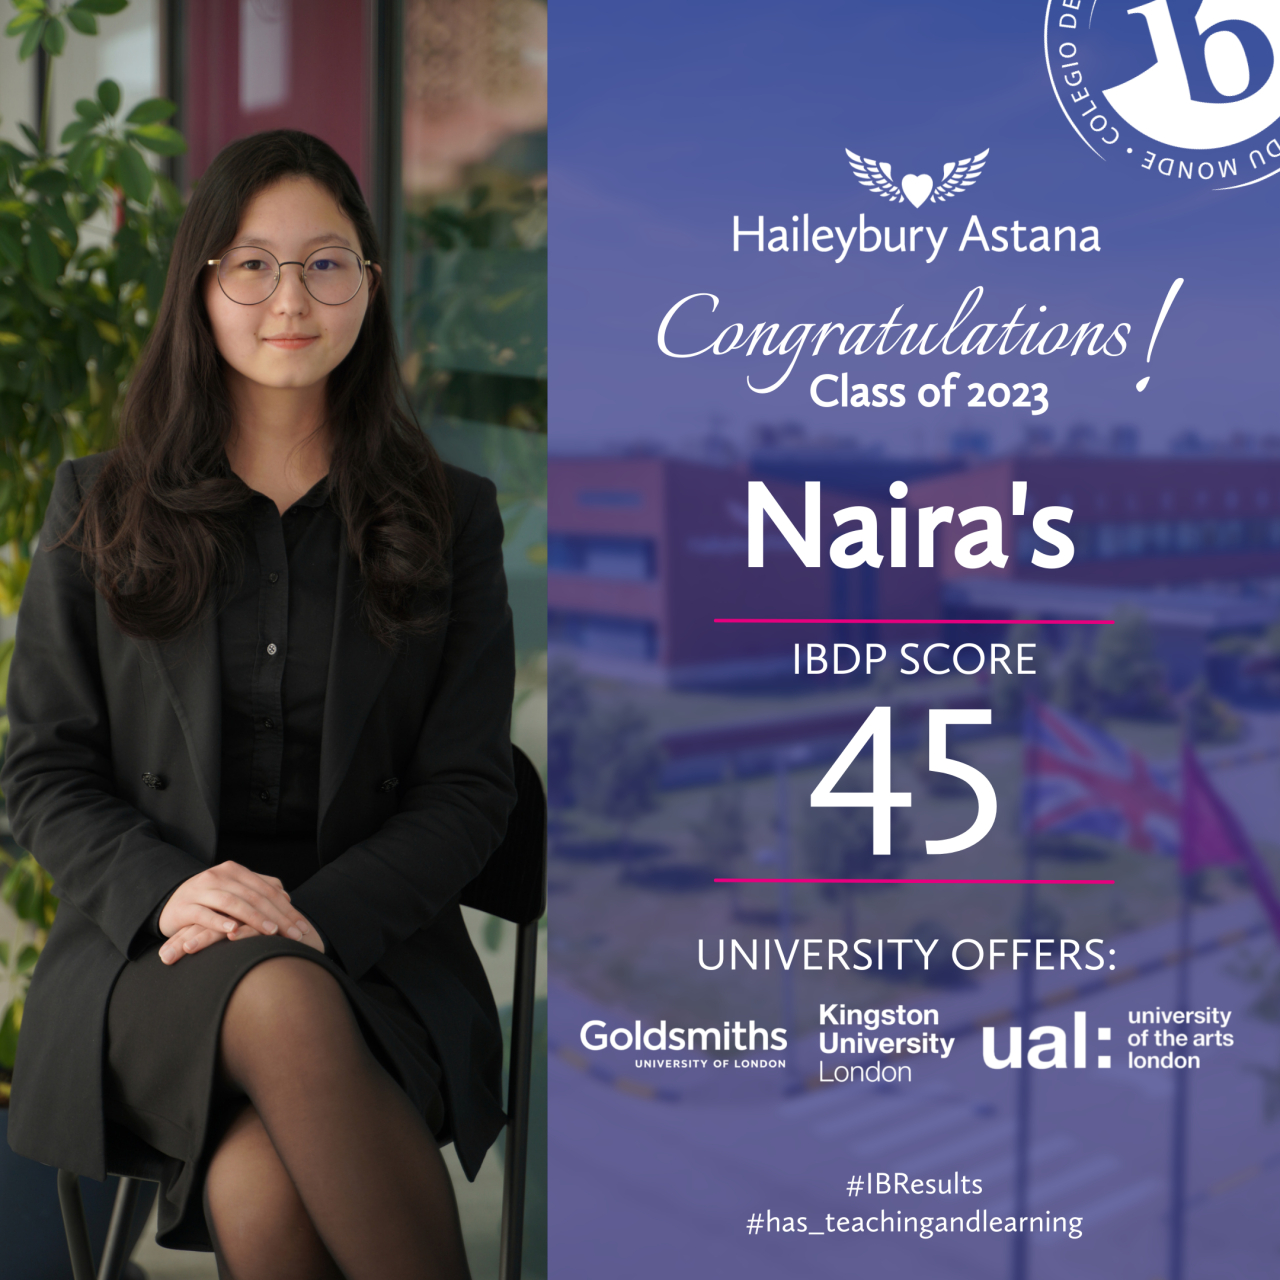 Небывалое достижение: Студентка Haileybury Astana набрала 45 баллов на экзаменах IB DP!